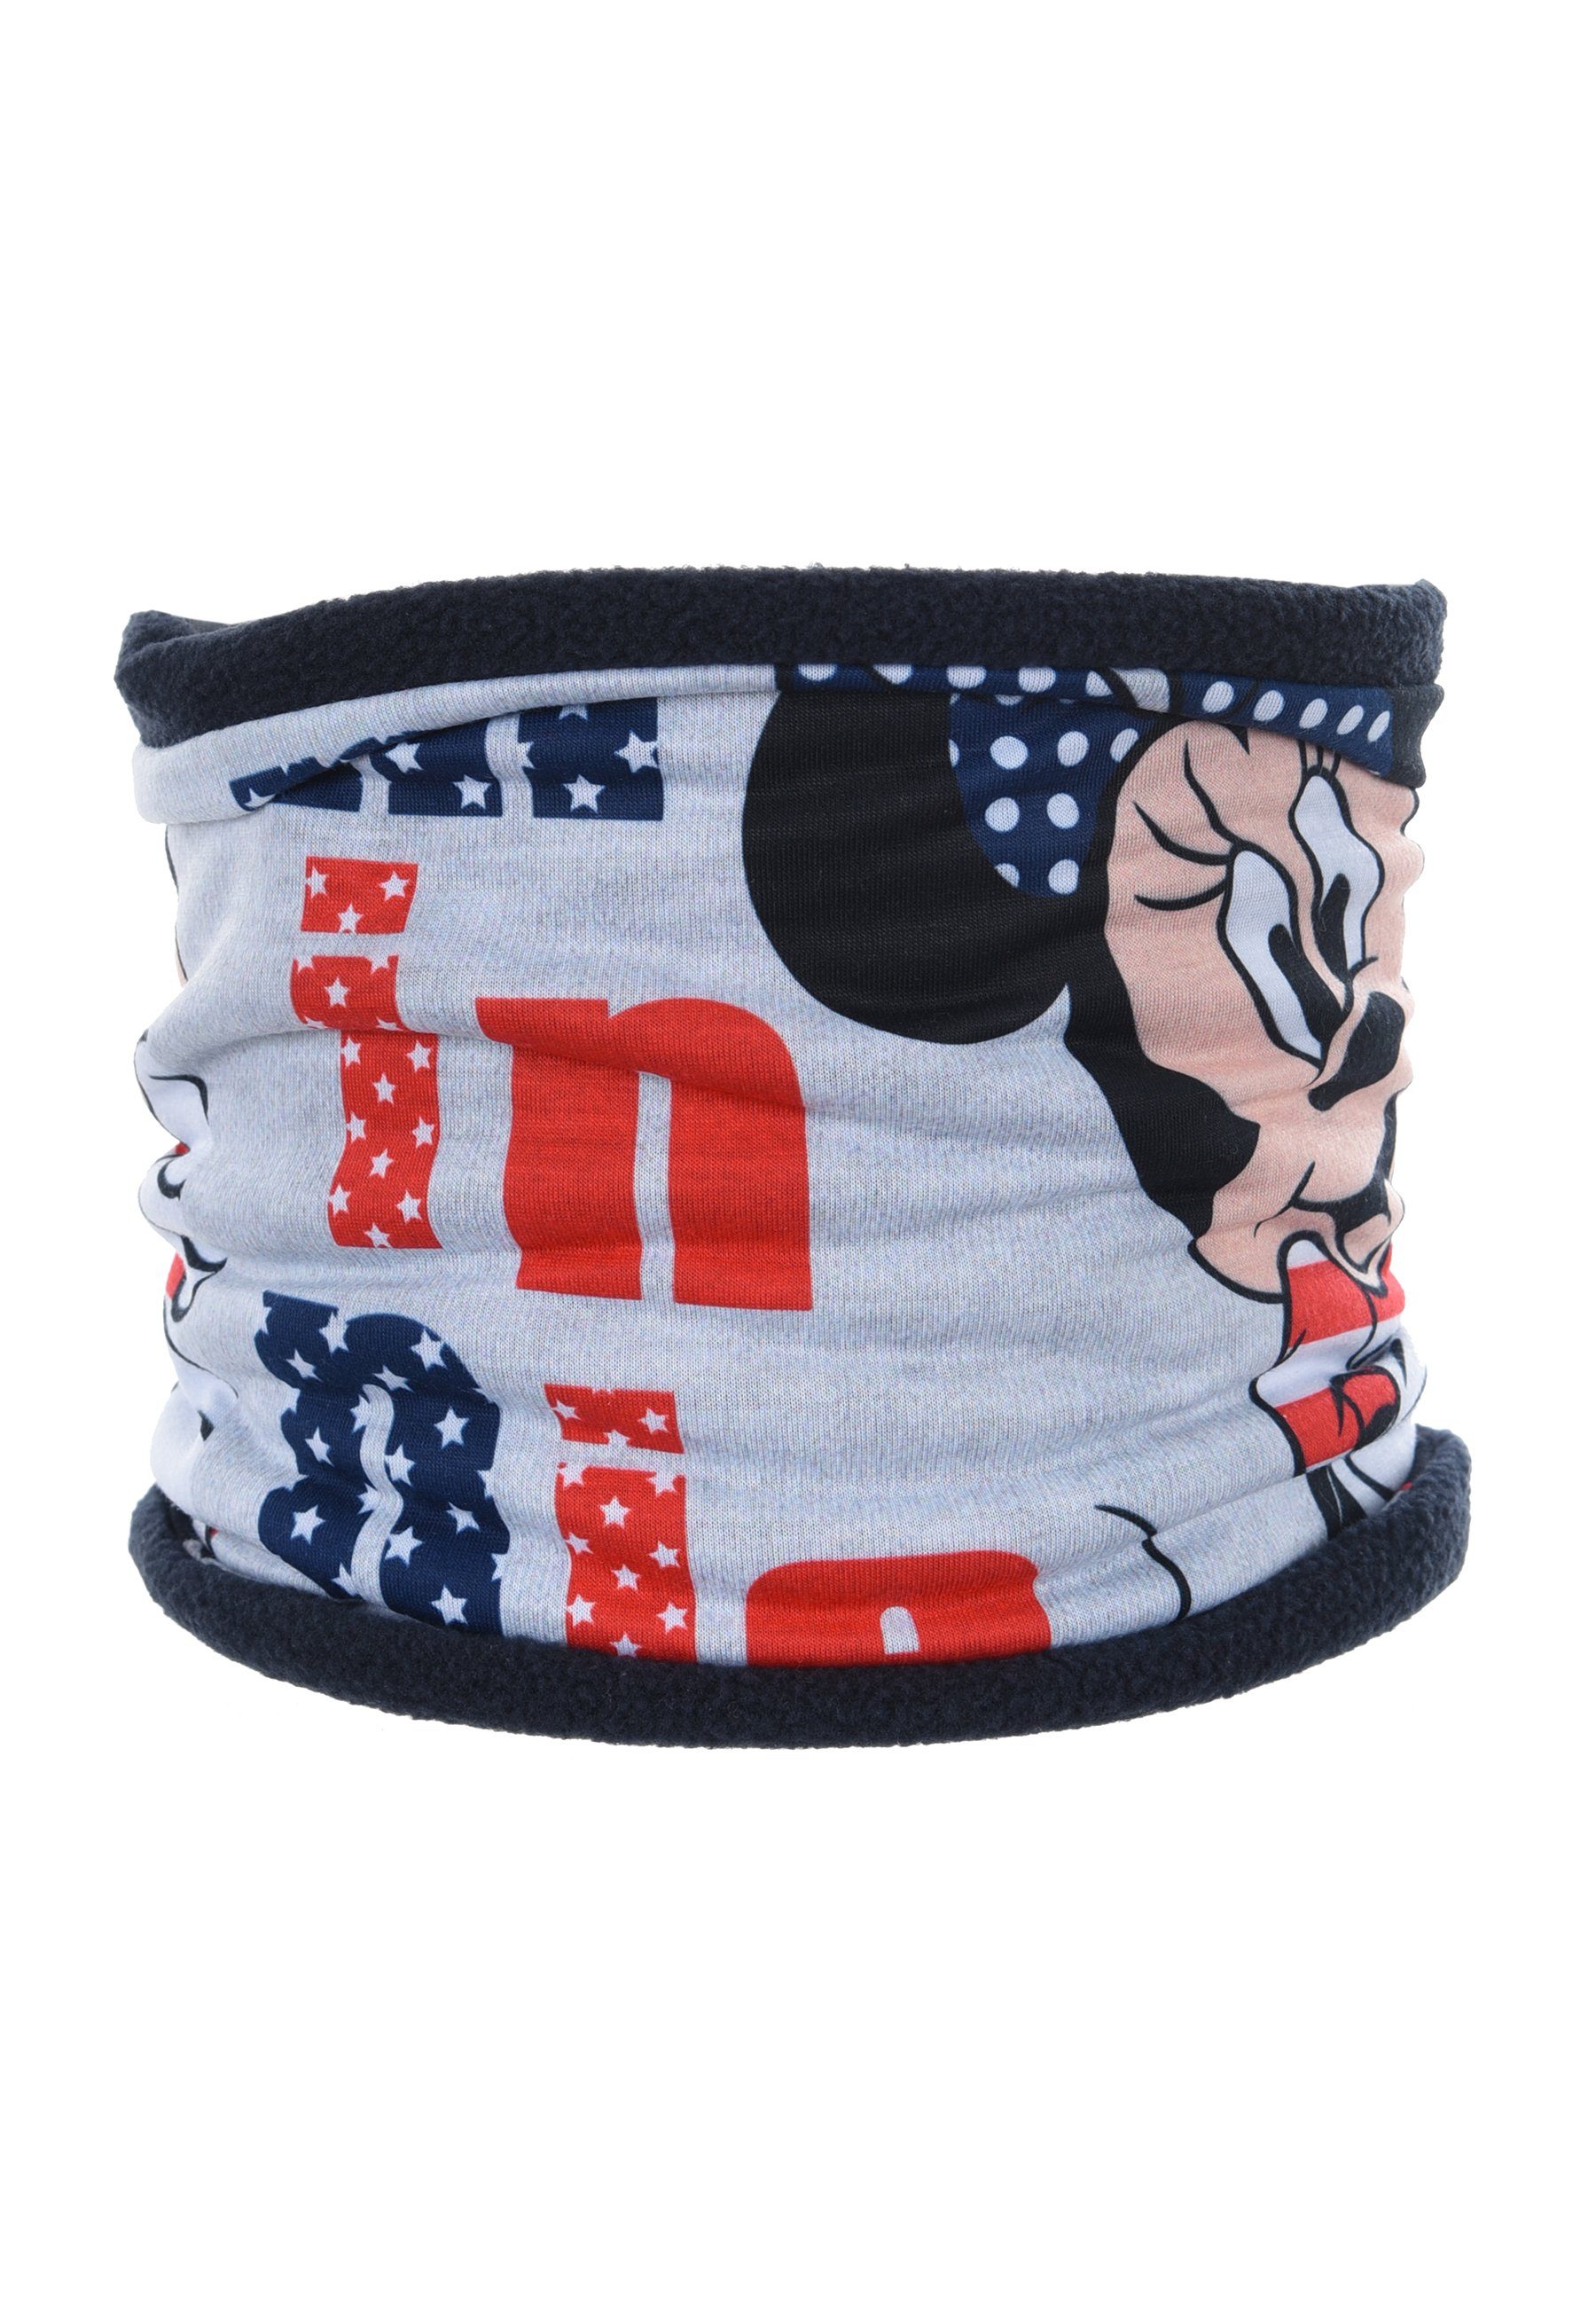 Disney Minnie Mouse Loop Kinder Mädchen Winter-Schal Schlauch-Schal, Mini Maus Grau